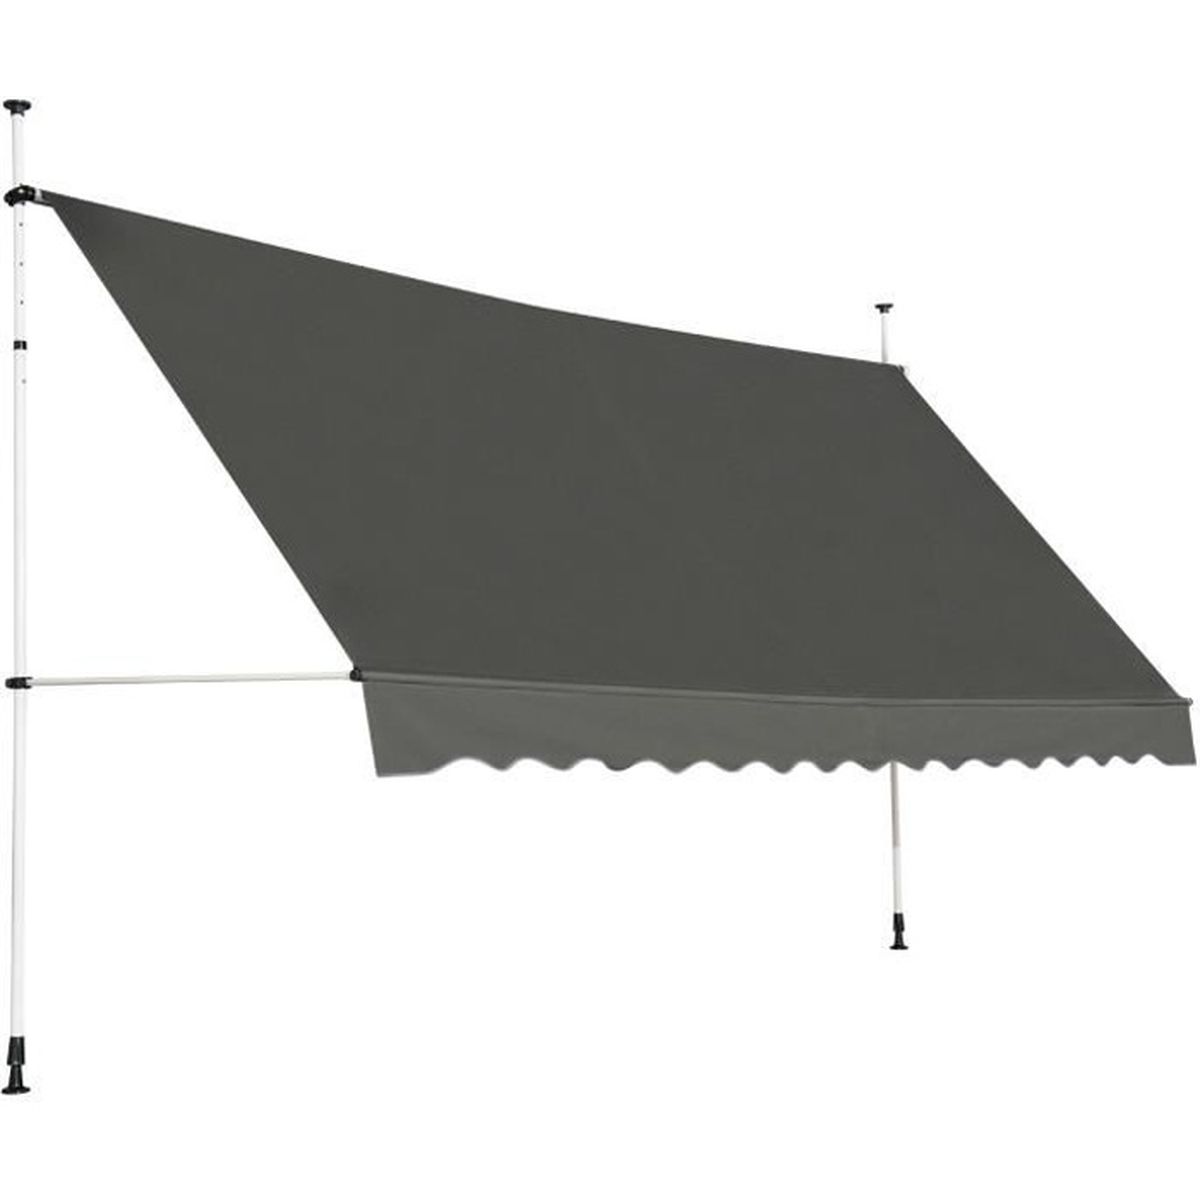 Rétractable Auvent Manuel Aluminium auvent patio parasol ABRI 3.5X2.5m Beige